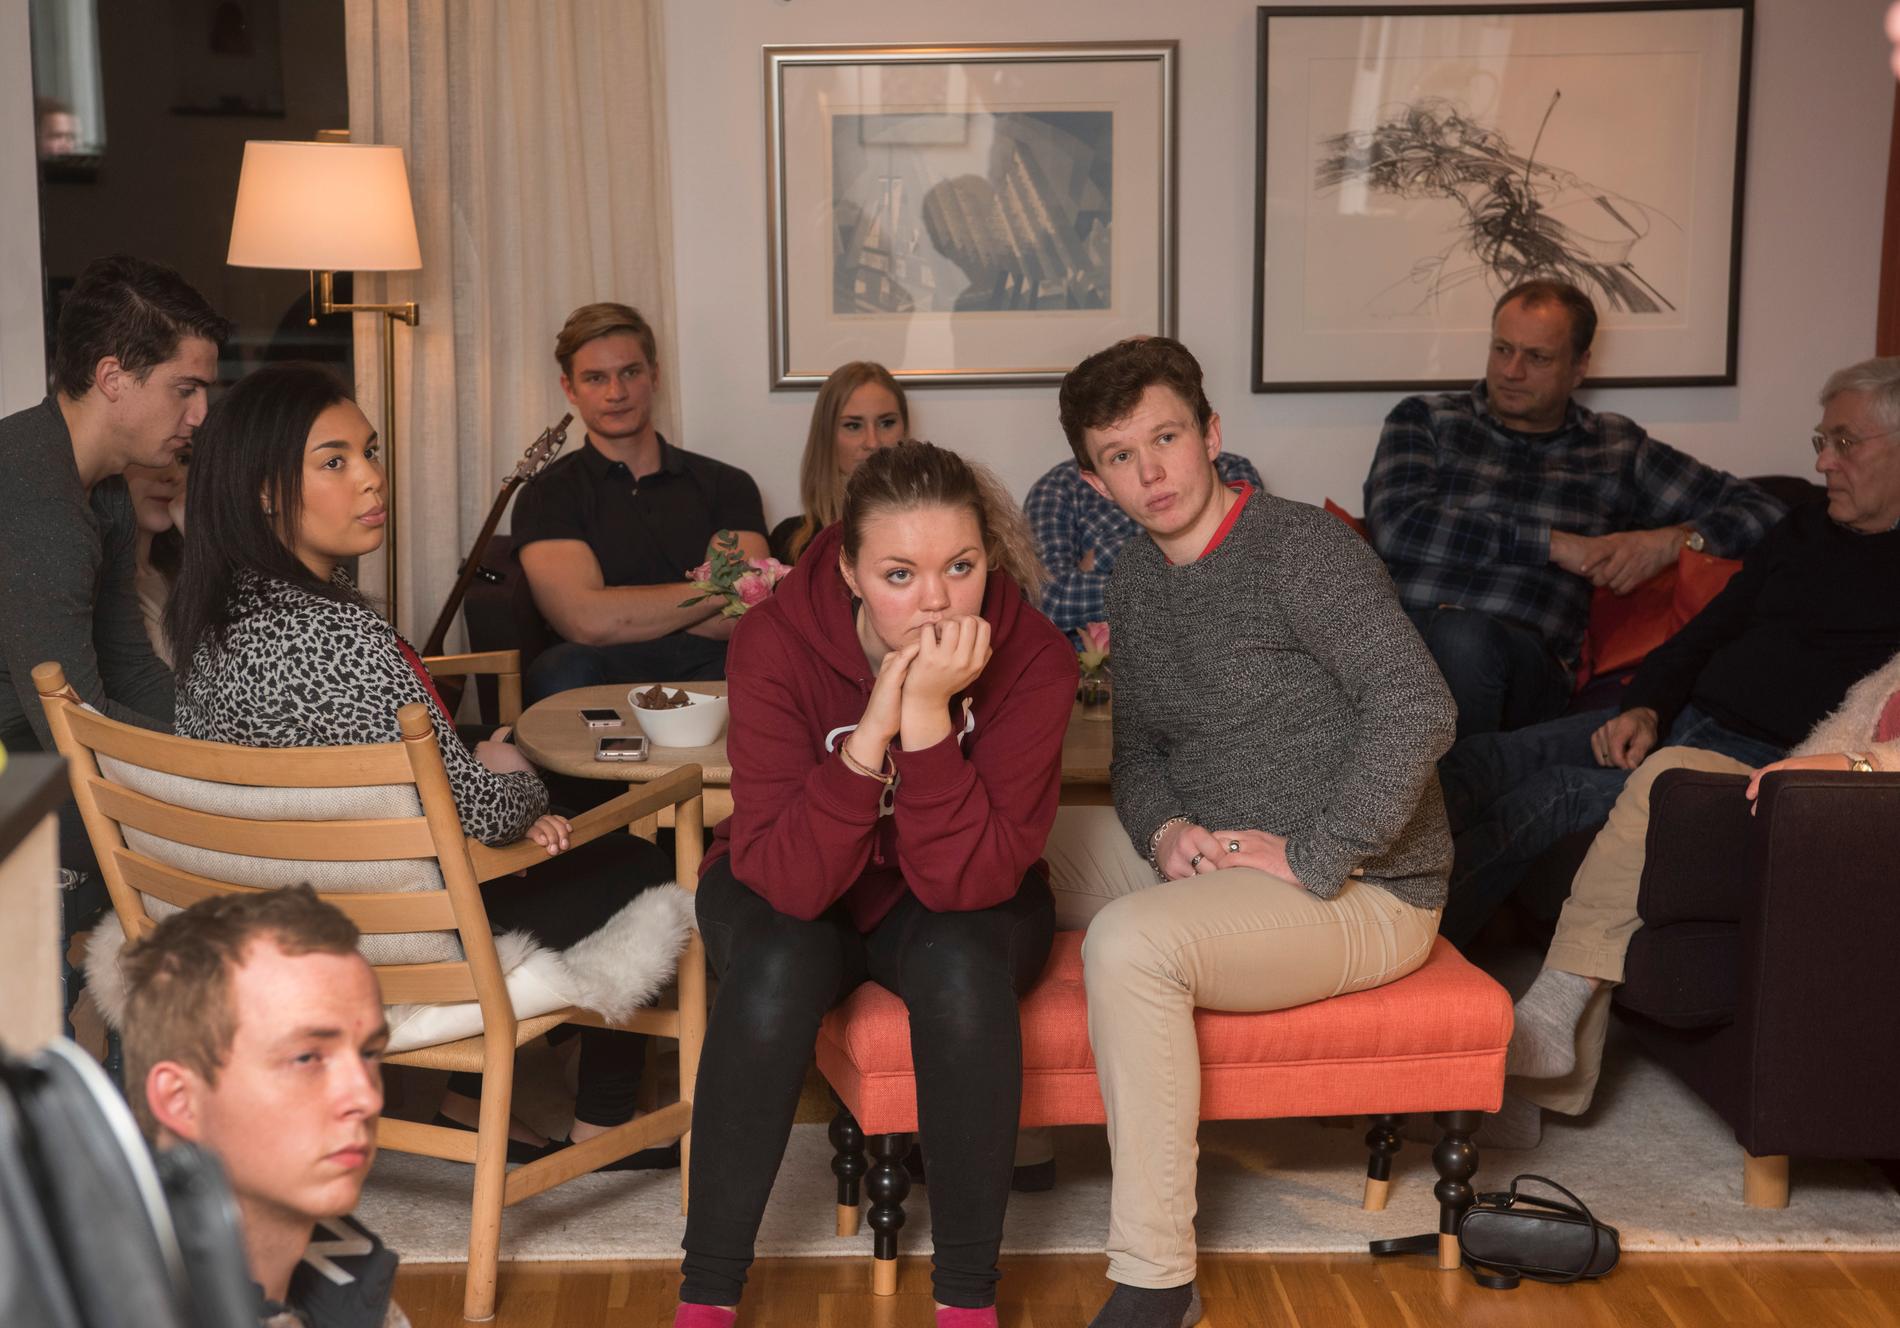  Ingen forelesningssal, men studentene Kristin Kvinnesland (19) og Benjamin Fjellheim Olsen (21) følger nøye med når Valen-Sendstad forteller historier fra Israel. 